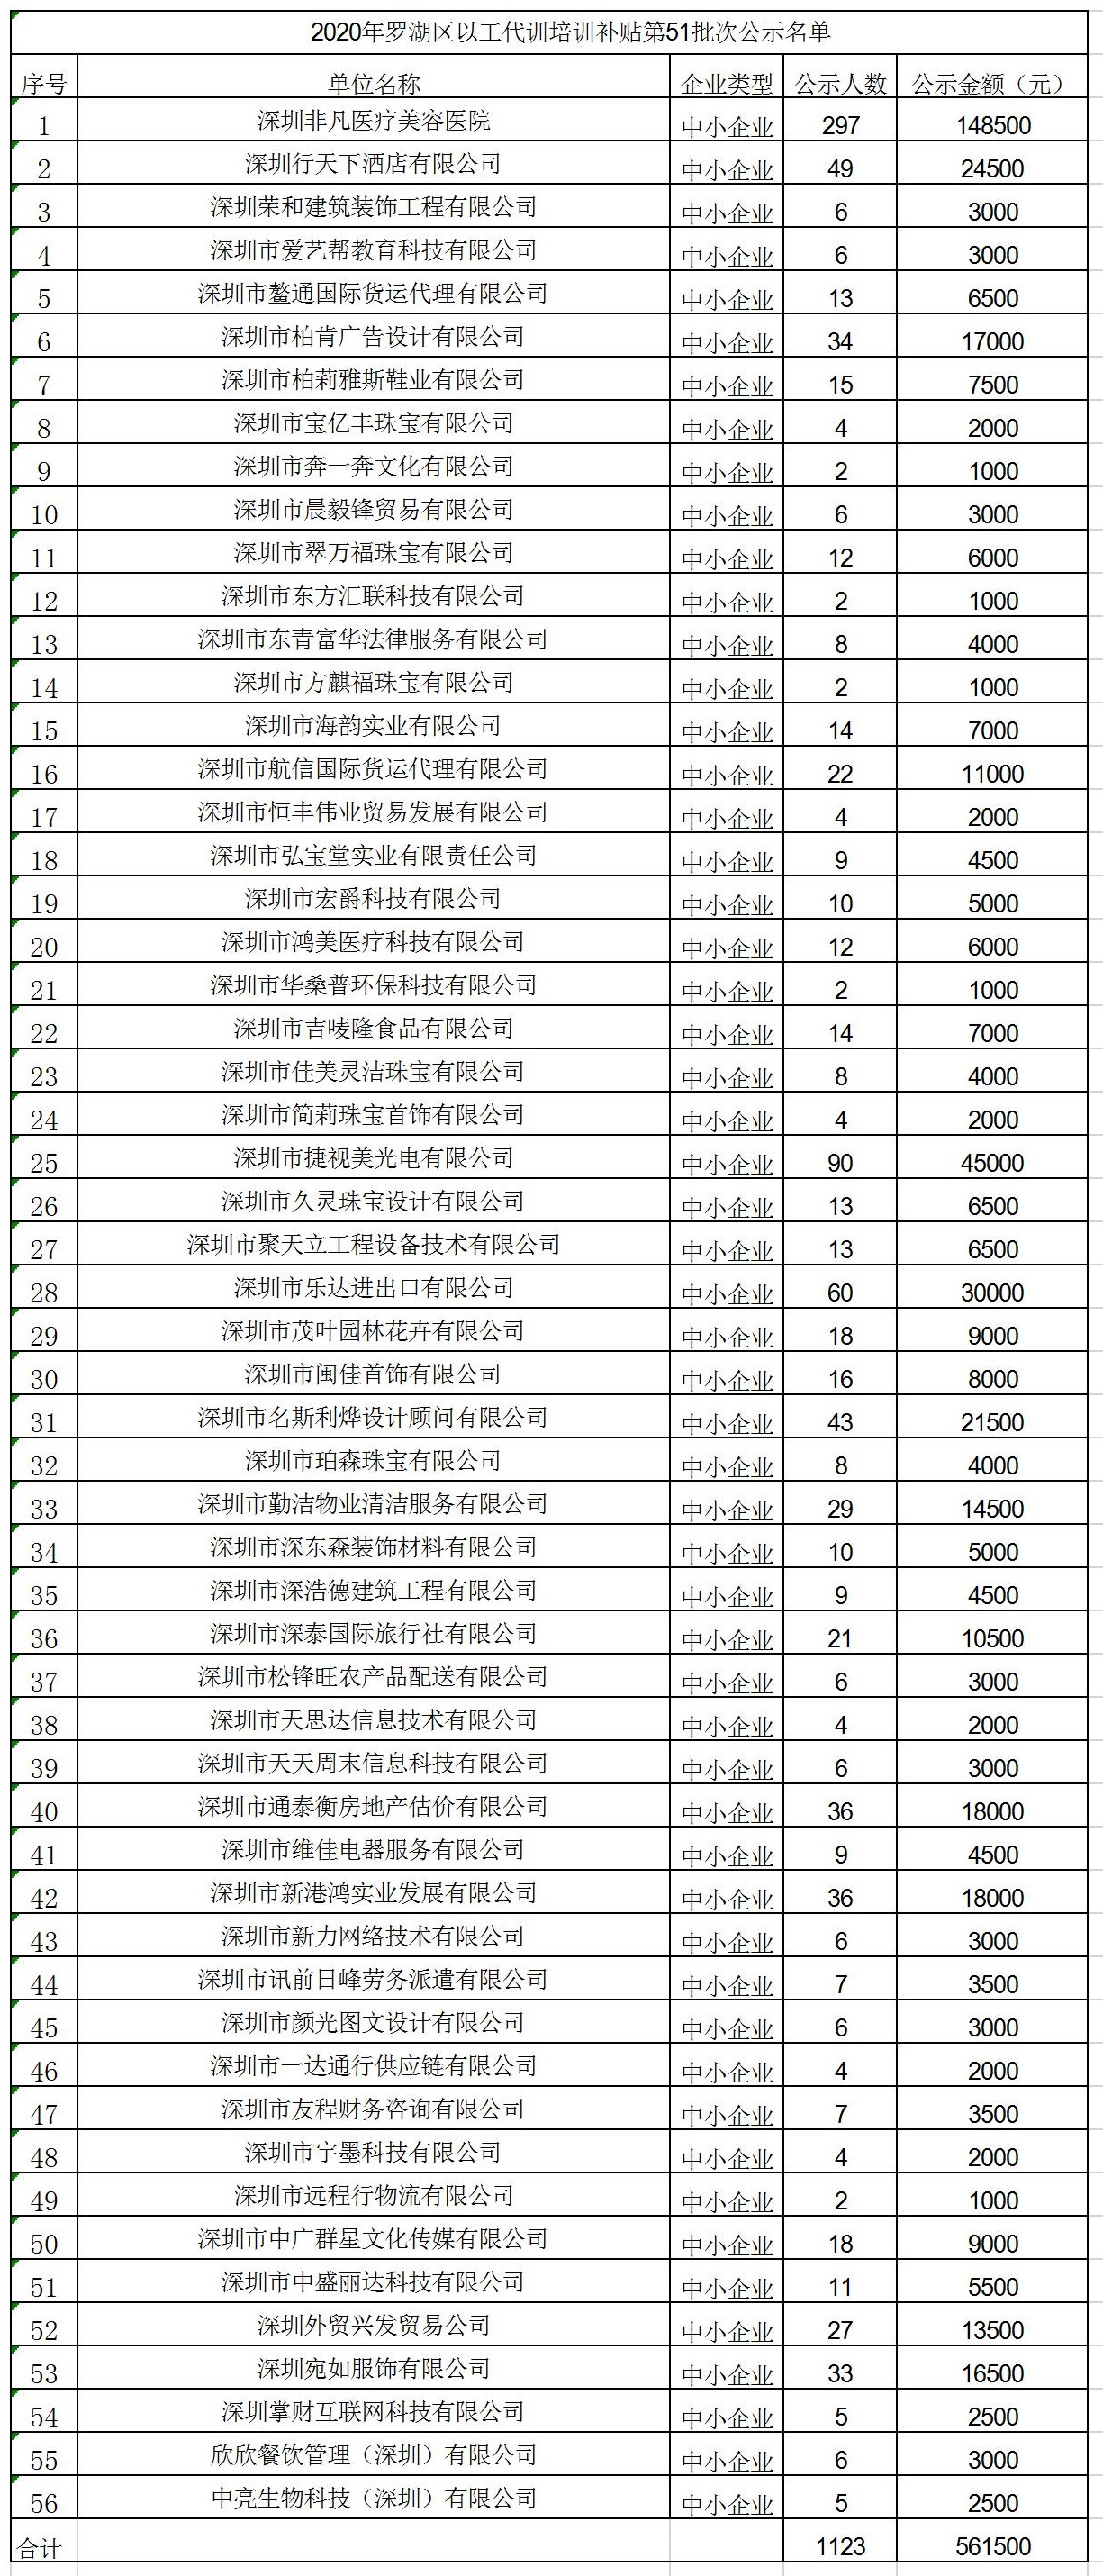 2020年深圳市罗湖区以工代训培训补贴第51批次公示名单.jpg